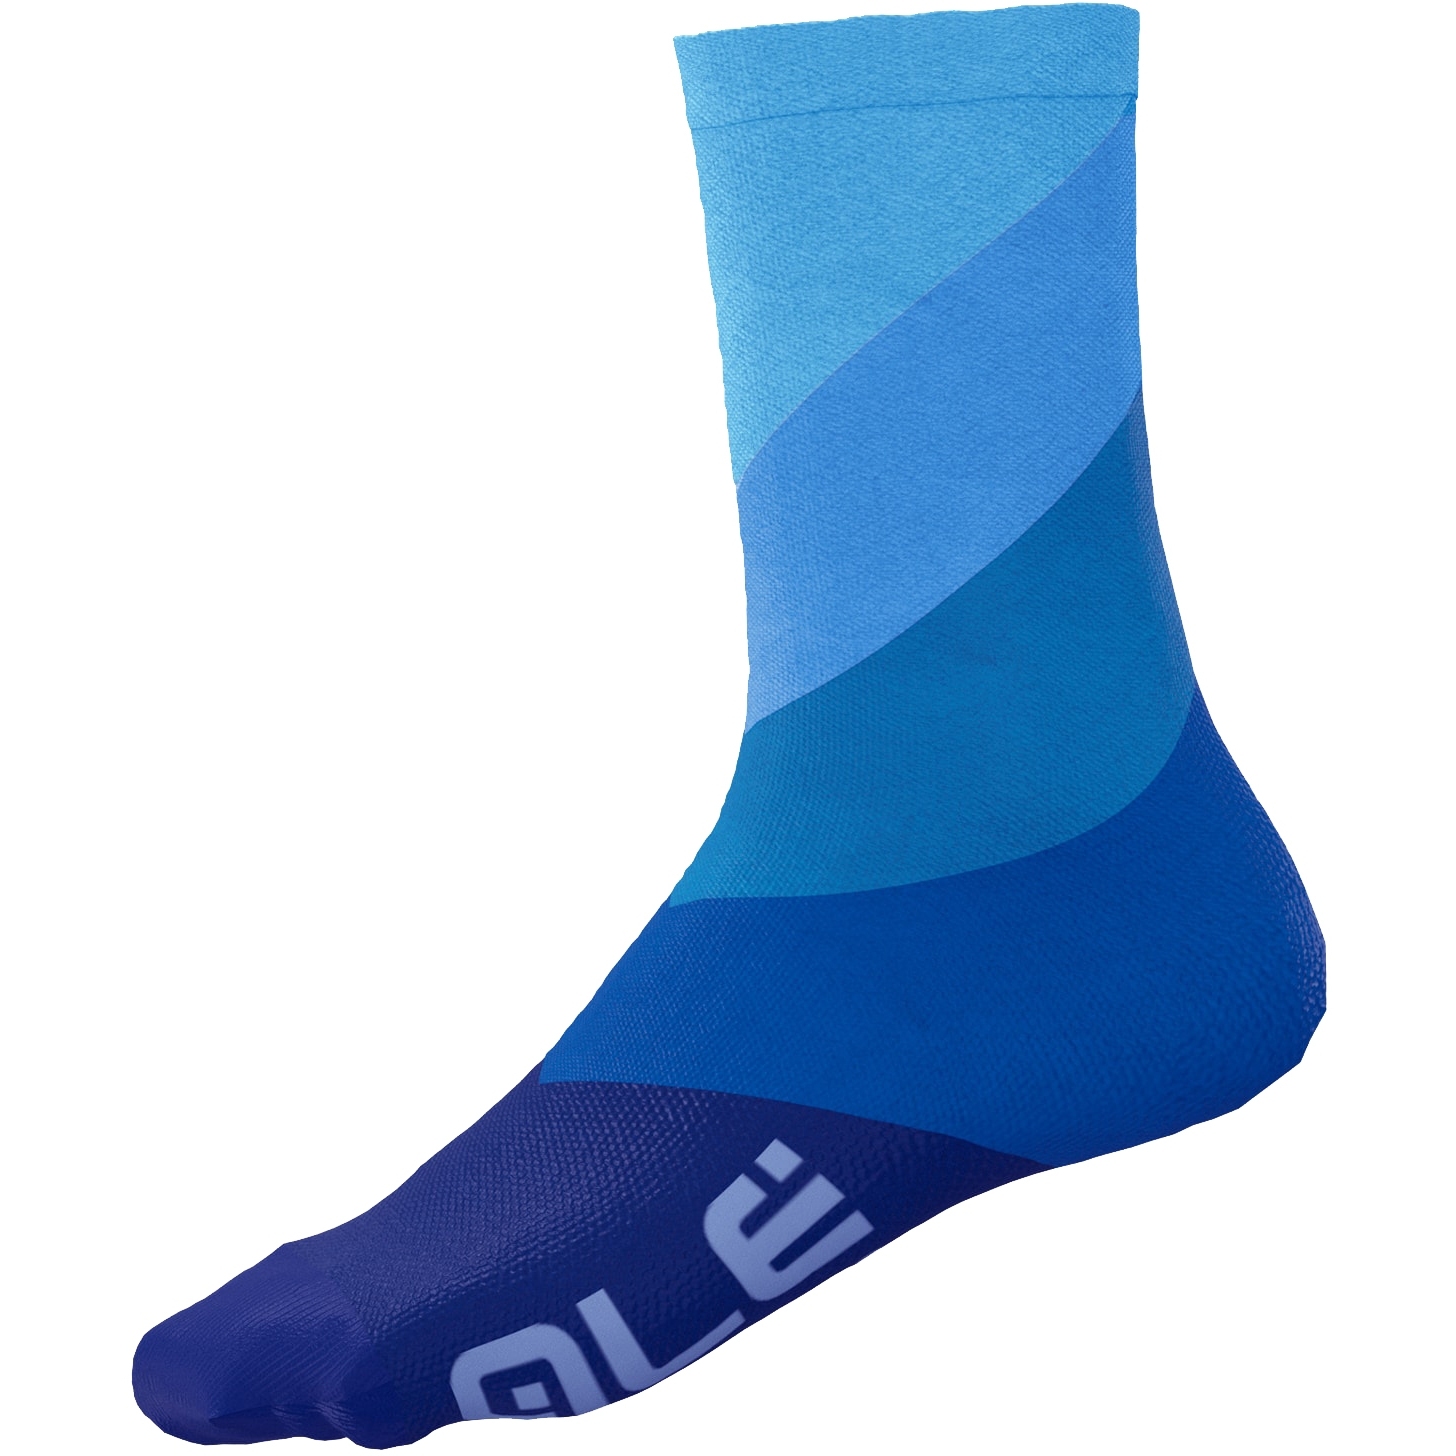 Produktbild von Alé Diagonal Digitopress Socken Unisex - blau